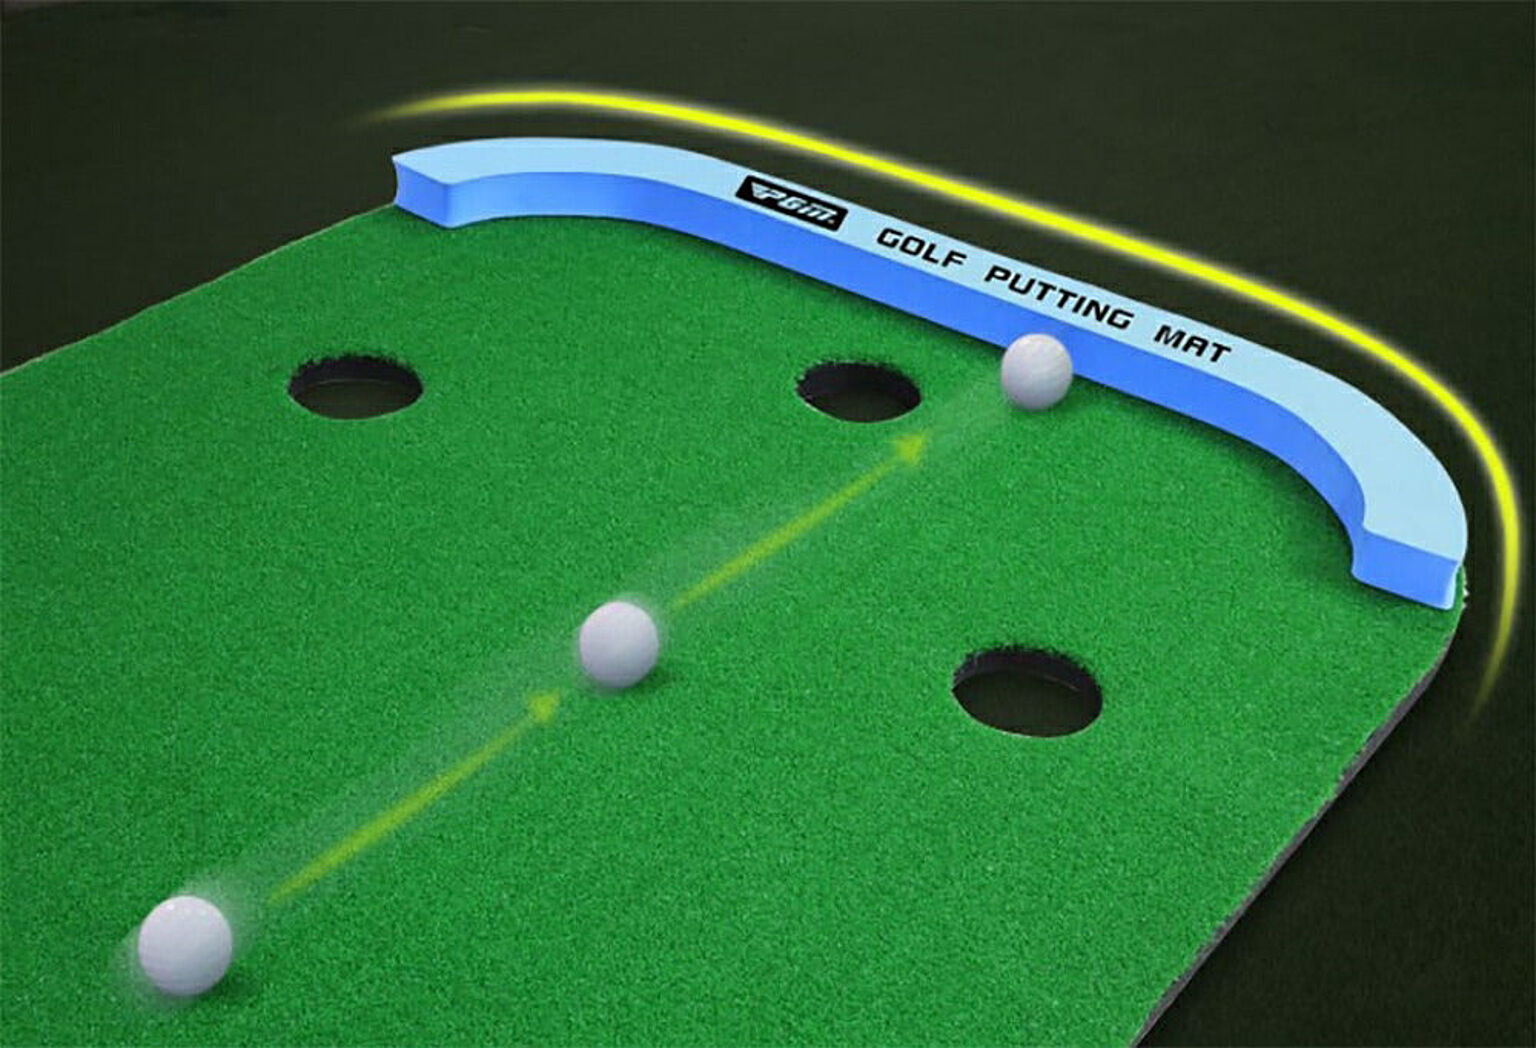 ゴルフ パターマット 3m 大型 パター練習器具 パター練習マット パター